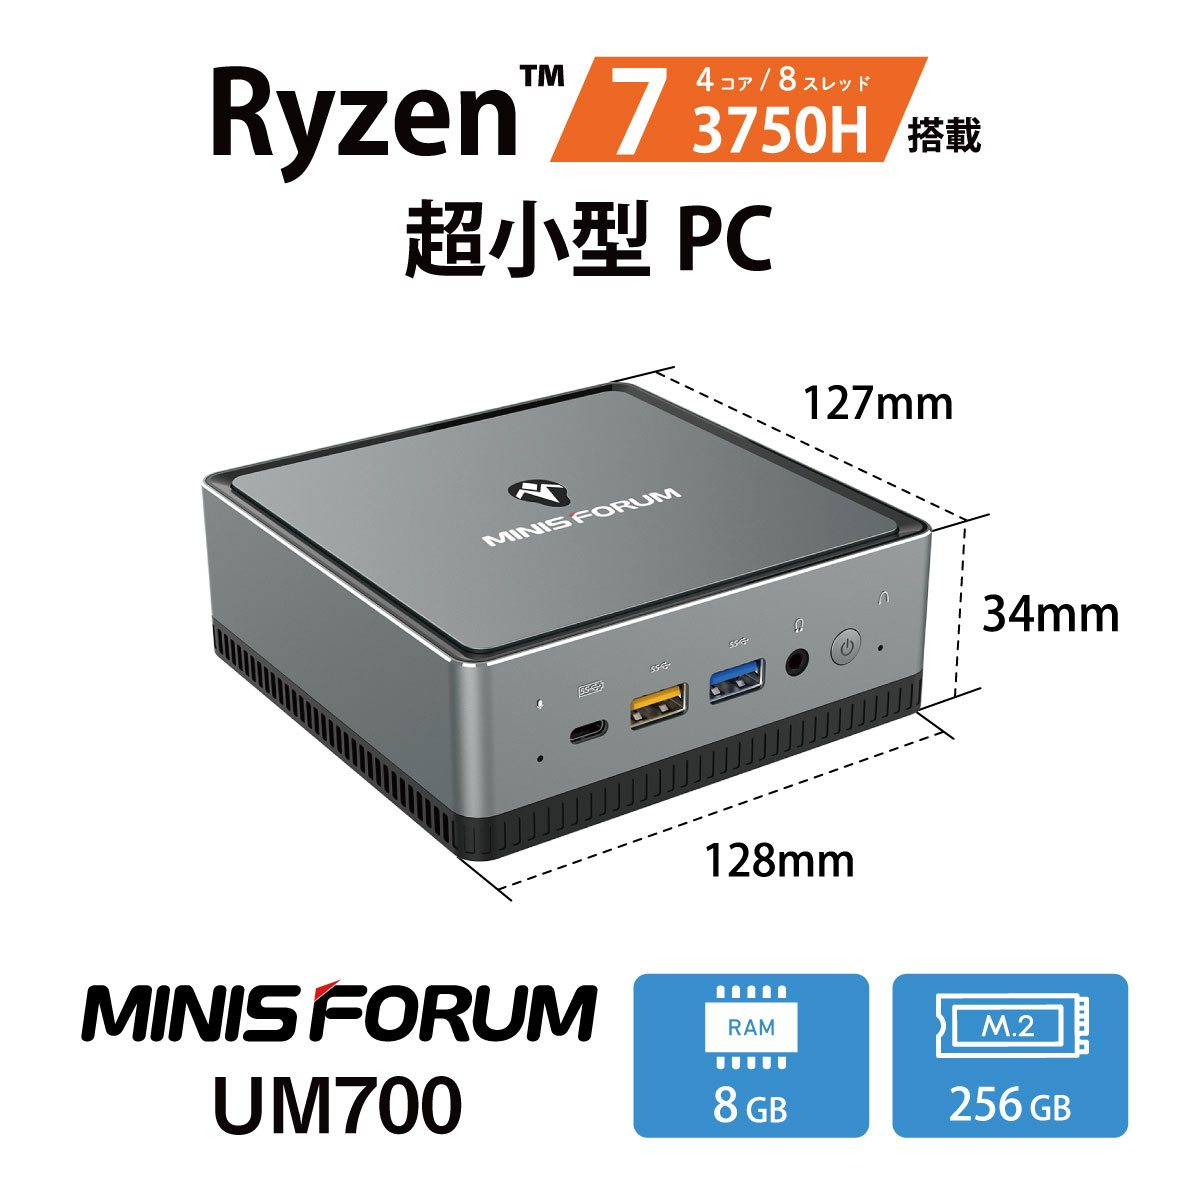 MINISFORUM UM700 ミニパソコンAMD Ryzen 7 3750H